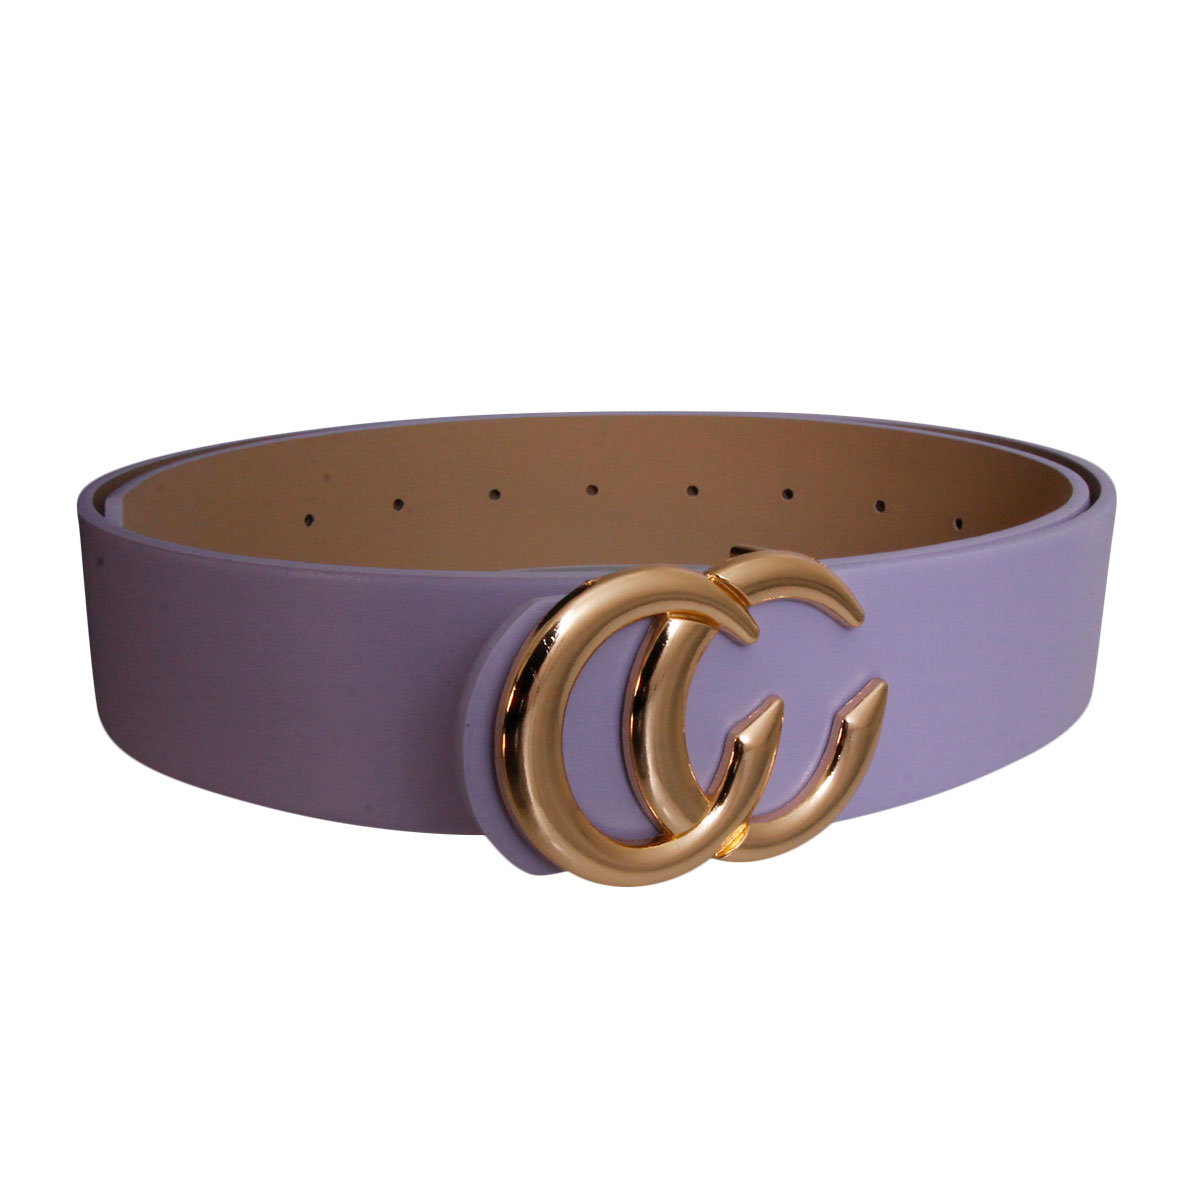 Lavender and Gold CC Designer Belt